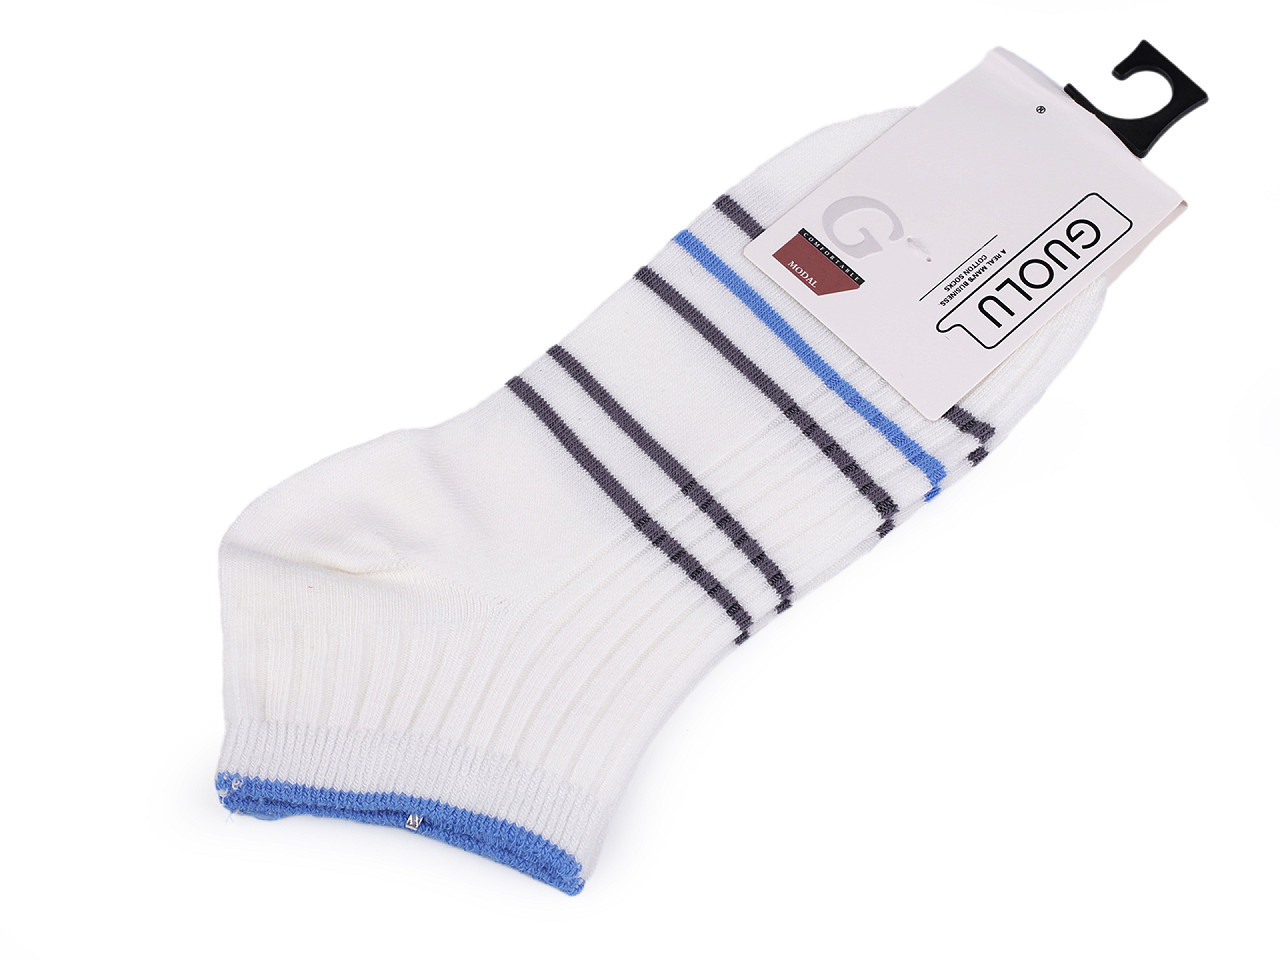 Pánské / chlapecké bavlněné ponožky kotníkové, barva 7 bílo-modrá šedá